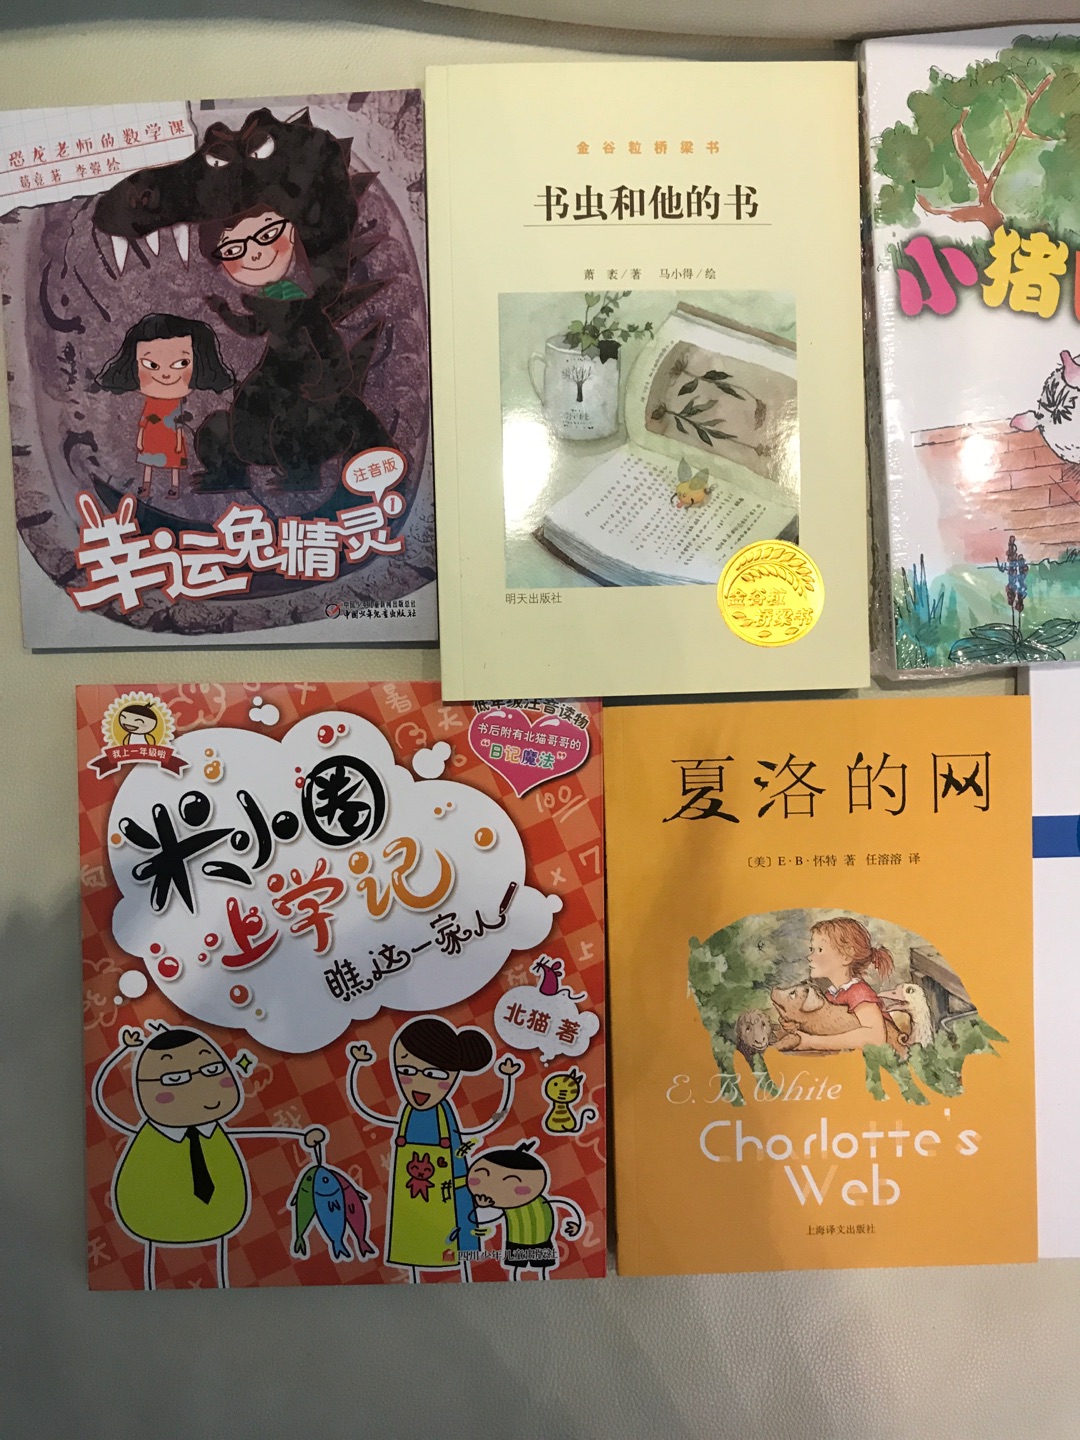 老师推荐一年级的小朋友阅读本套书中的《恐龙老师的数学课》。中国少儿出版社的，应该错不了，所以我买了全套，跟小朋友一起学习。